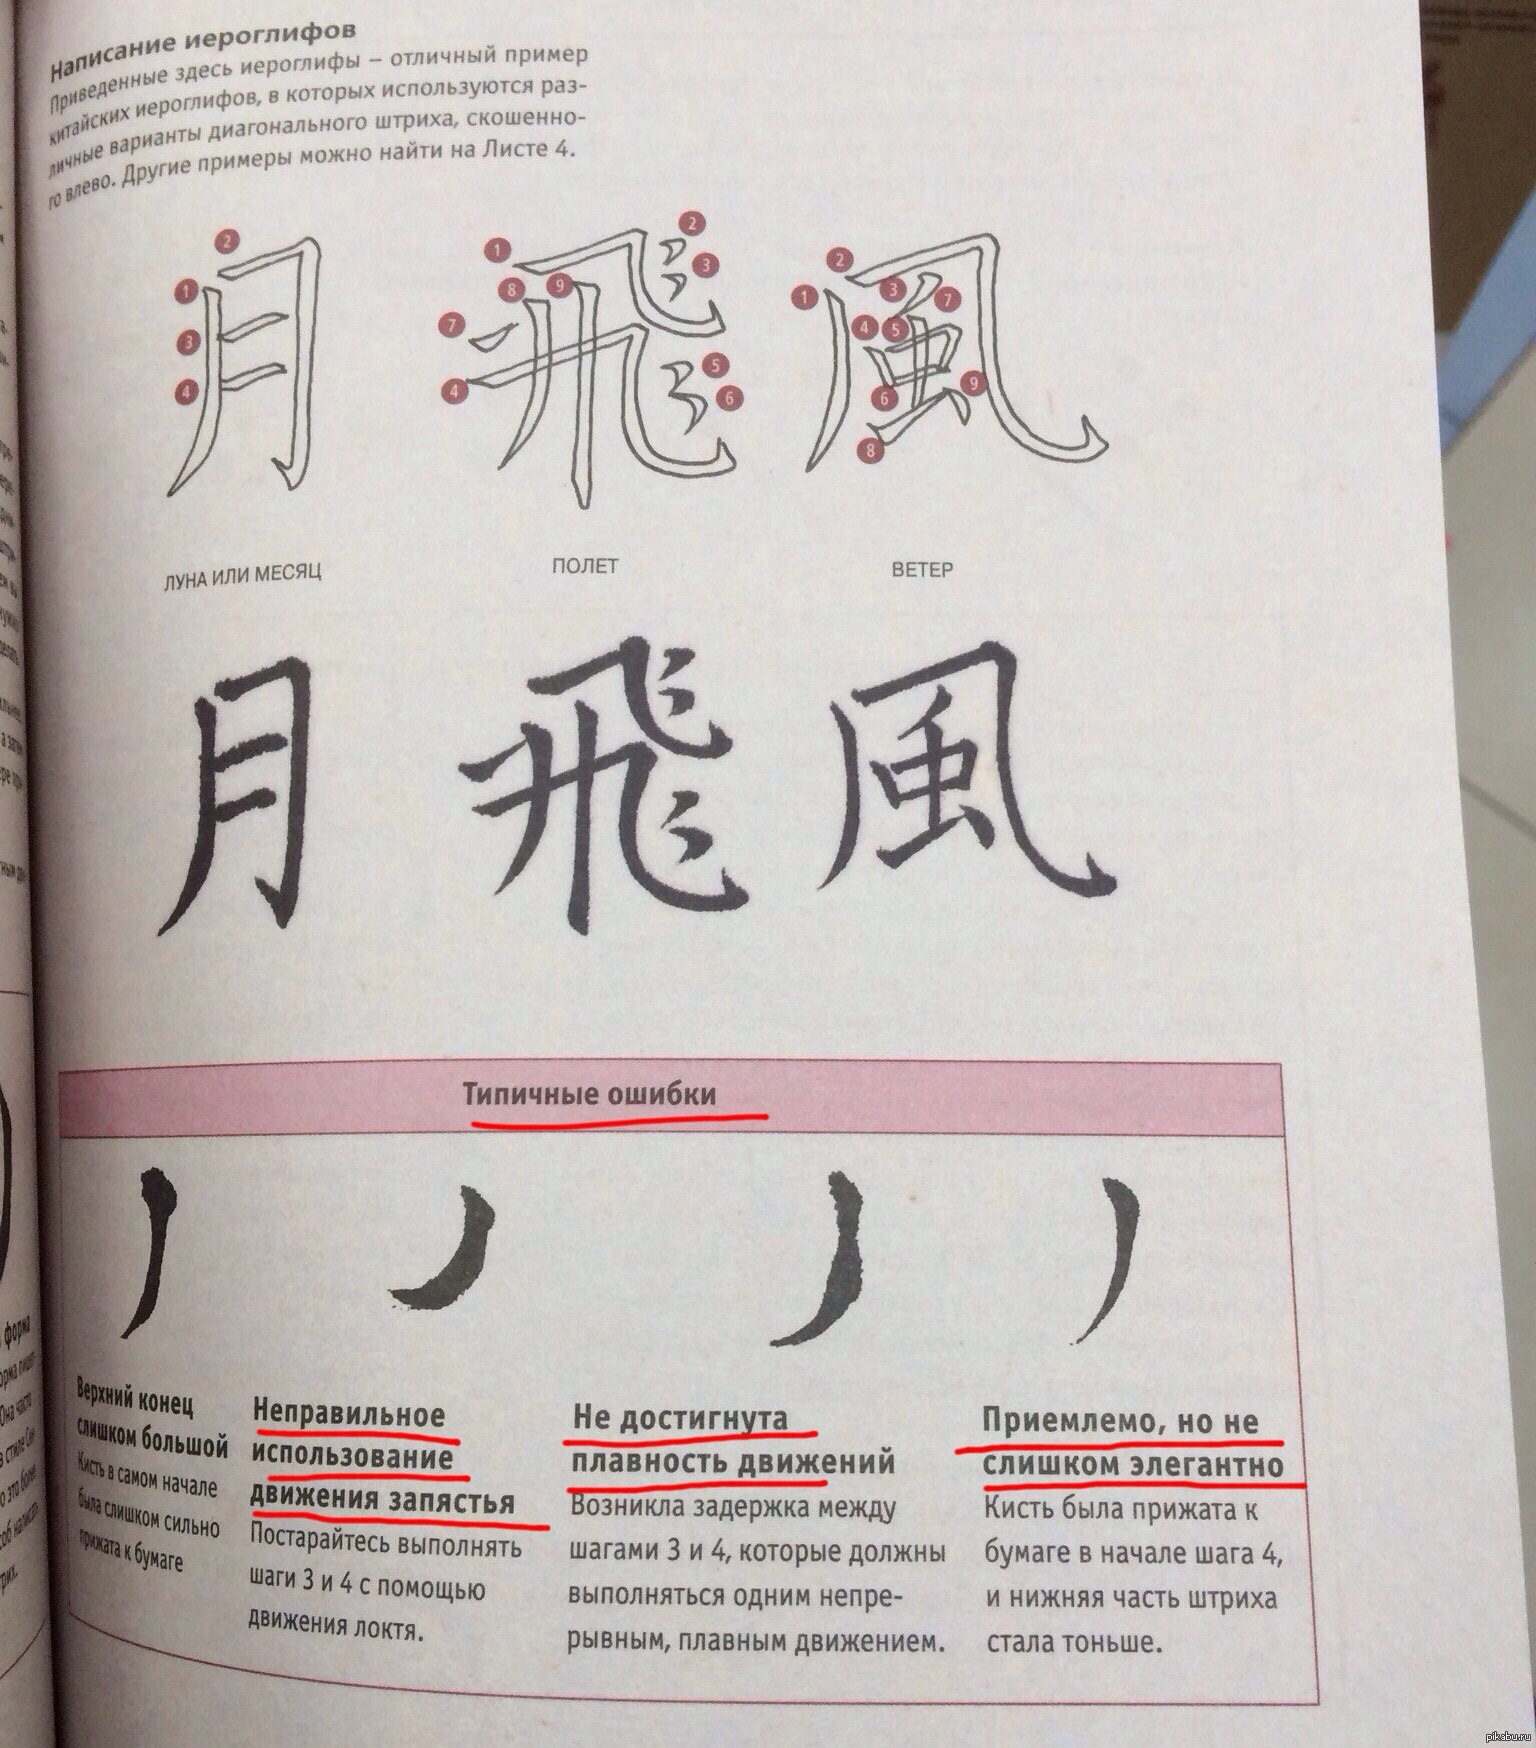 распознавание китайских иероглифов по фото